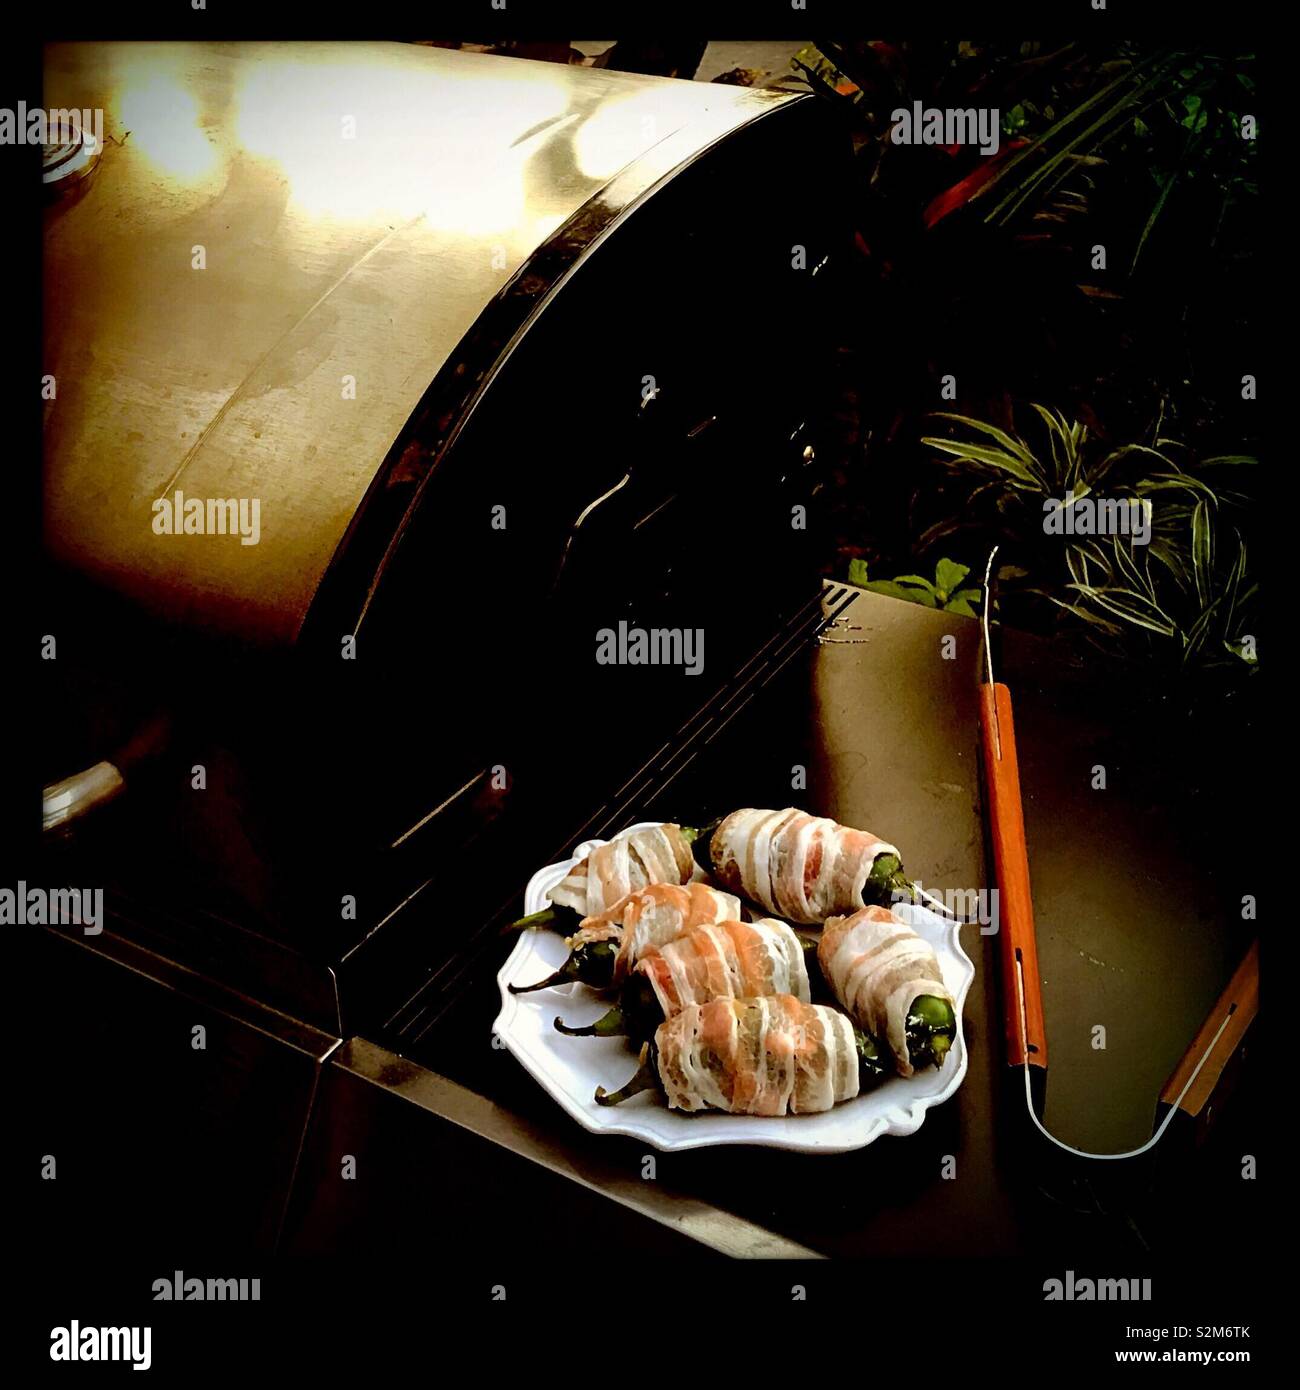 Eine Platte mit Speck umwickelt jalapeños sitzt auf dem Grill Leiste neben einigen Zangen als Grill wärmt für das Grillen. Stockfoto